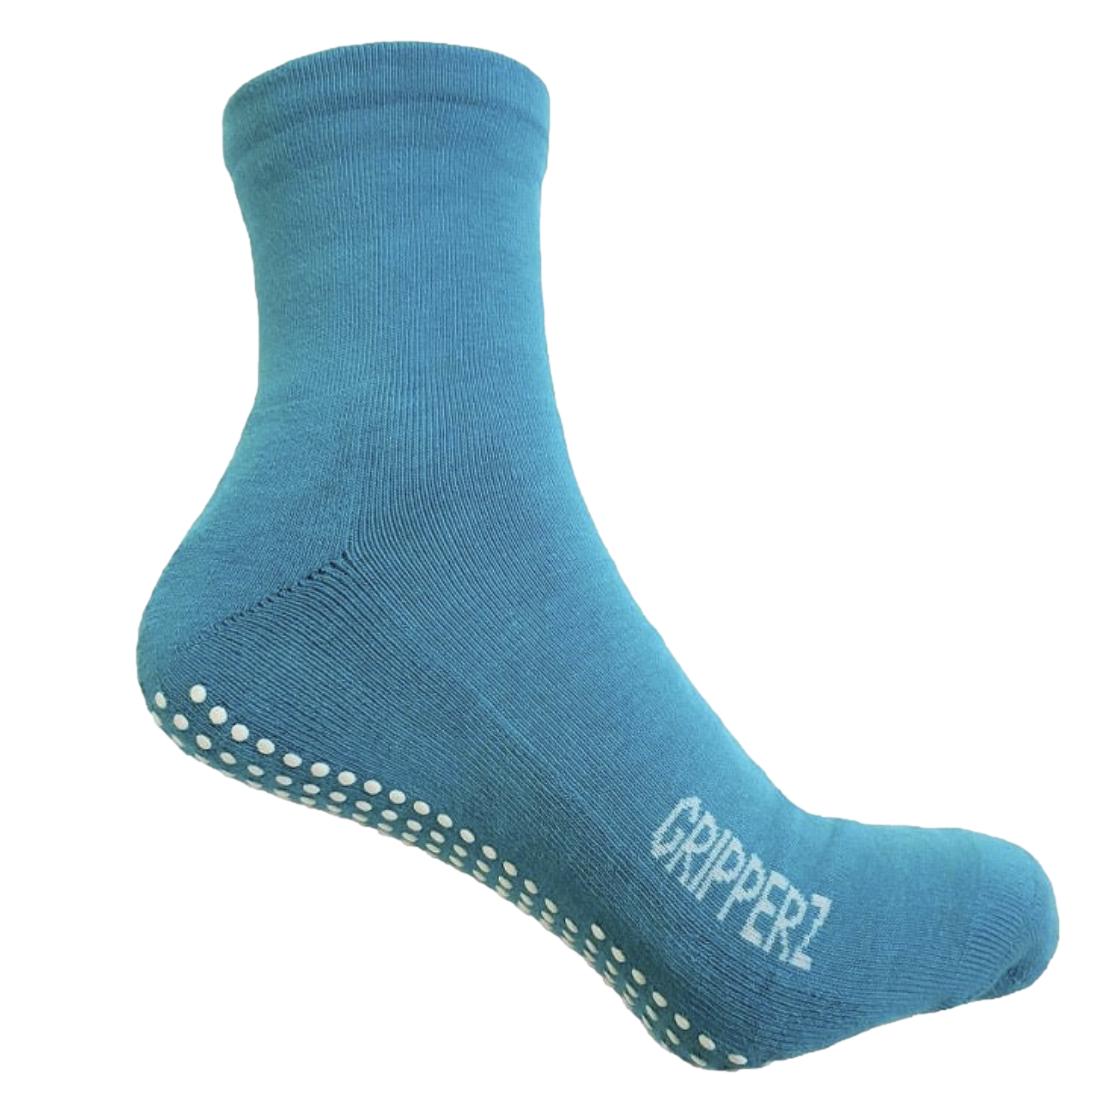 Hospital Socks, Non Slip Socks, Socks for Nursing Homes